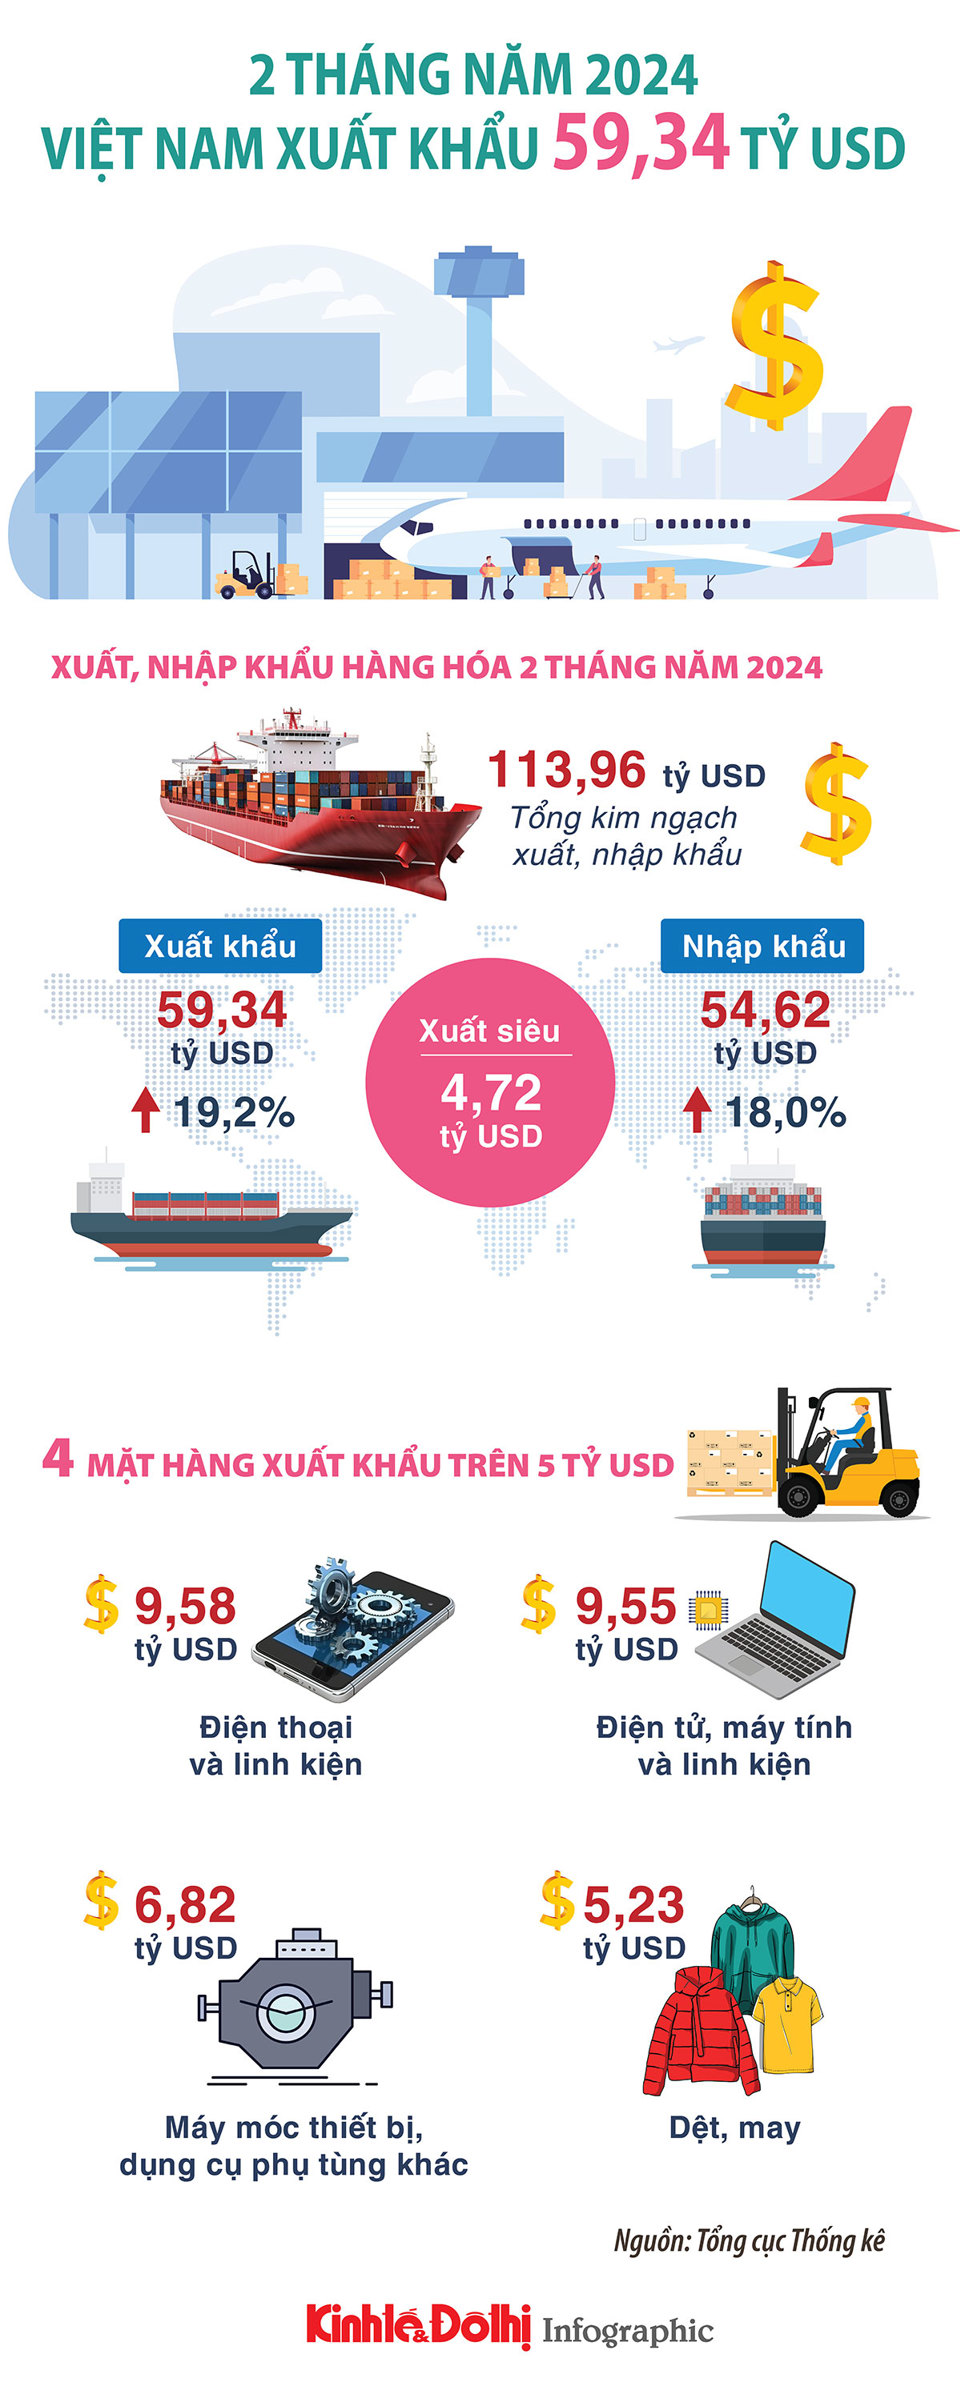 Việt Nam xuất khẩu 59,34 tỷ USD trong 2 tháng đầu năm 2024 - Ảnh 1